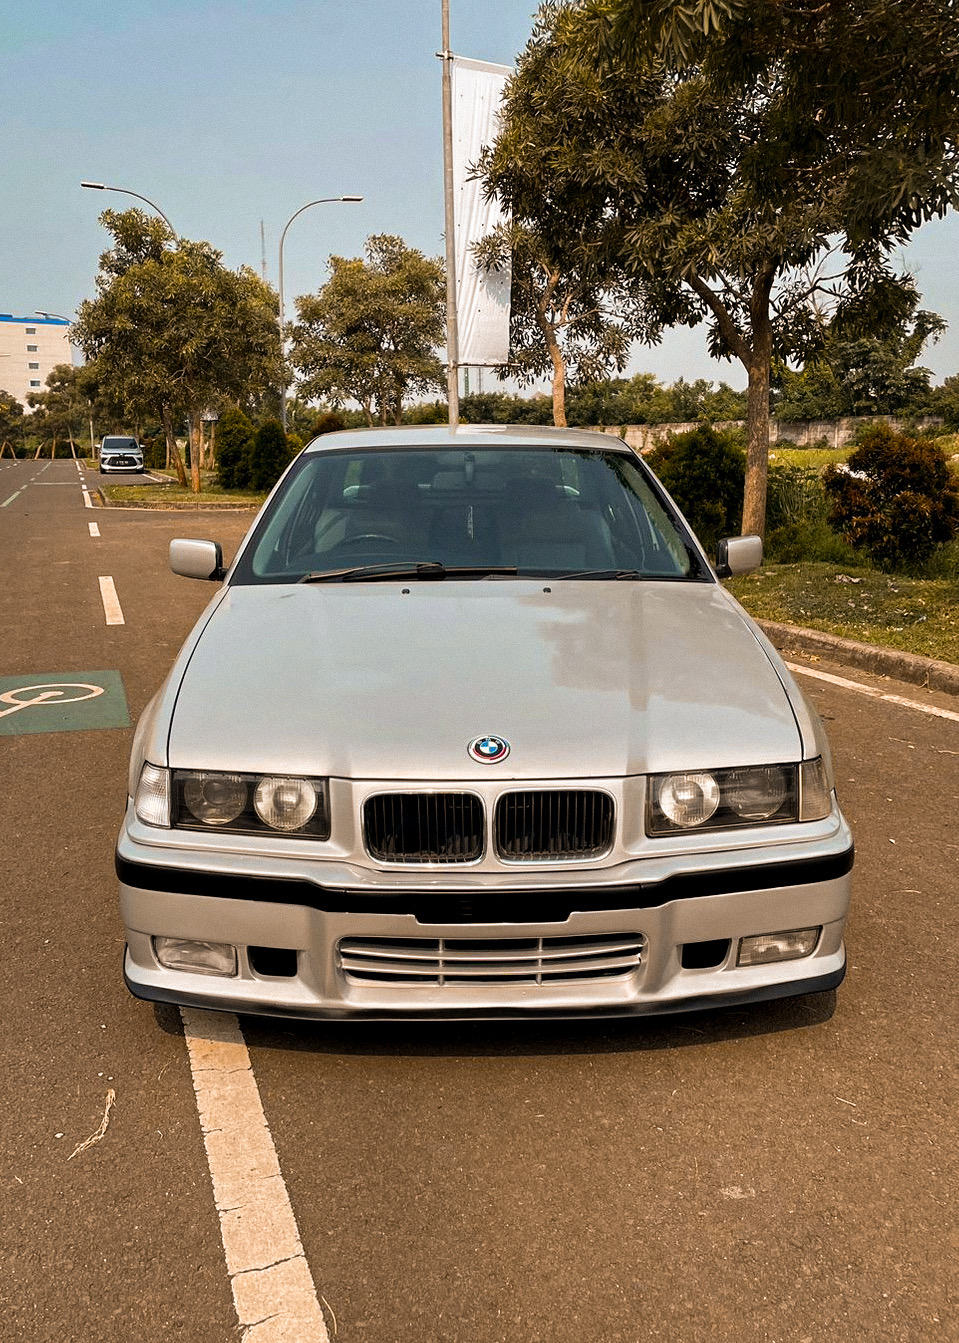 BMW 323i E36 M52B25 1996